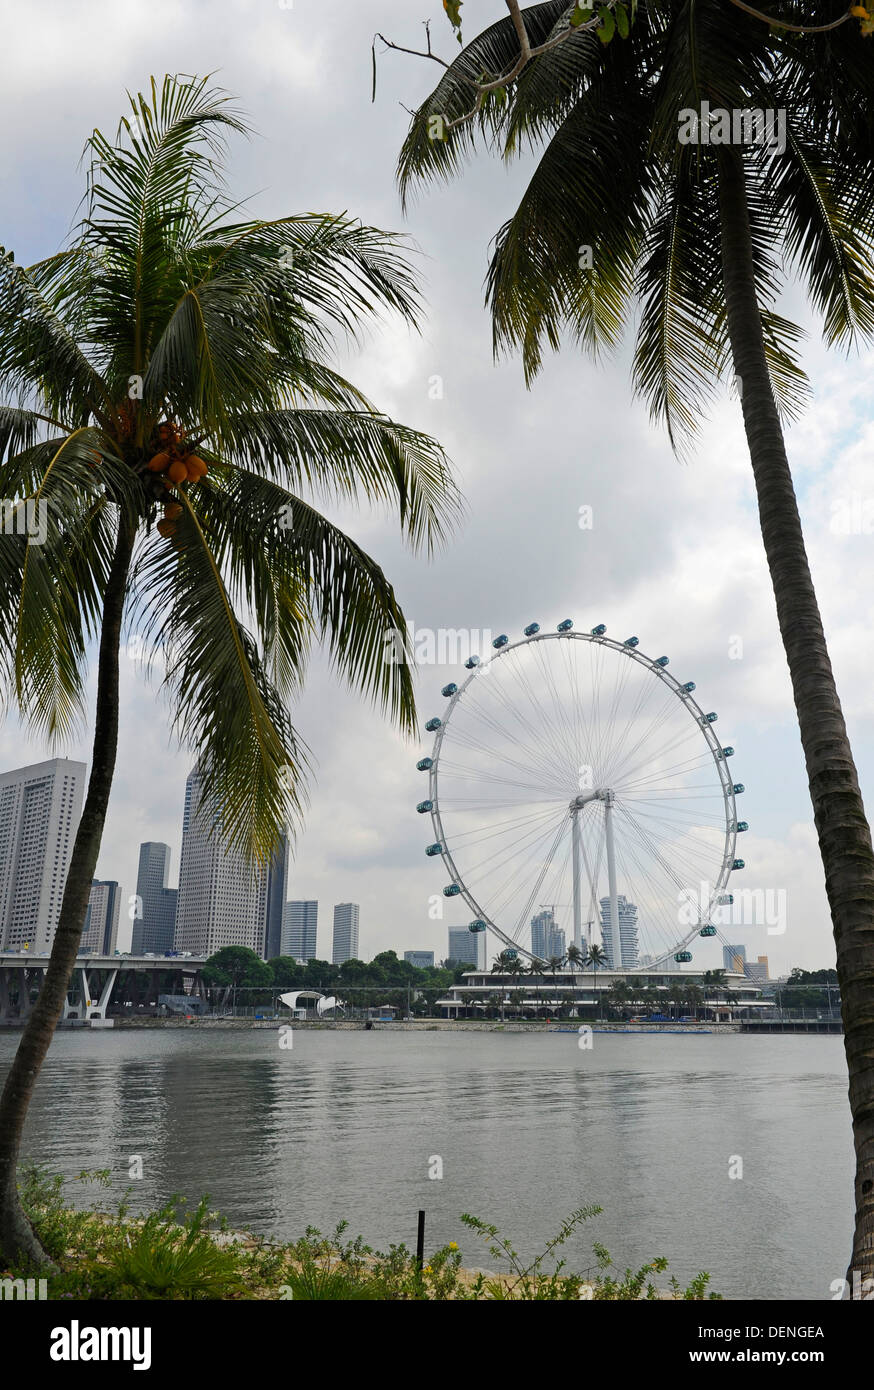 Il Singapore Flyer, il più alto ruota panoramica Ferris in tutto il mondo, presso i giardini della baia. Foto Stock